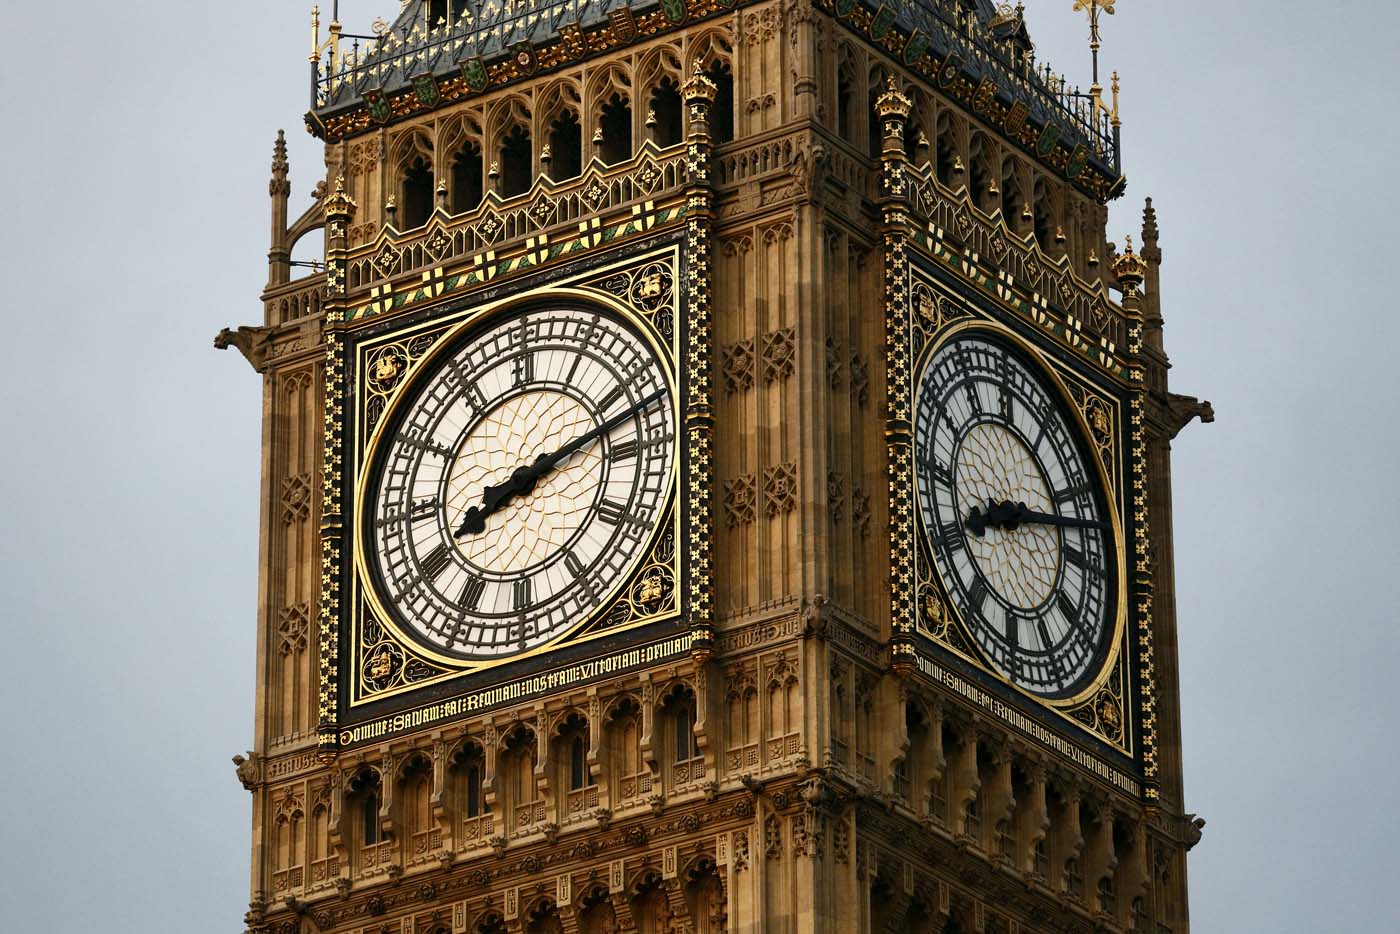 Big Ben Clock Face